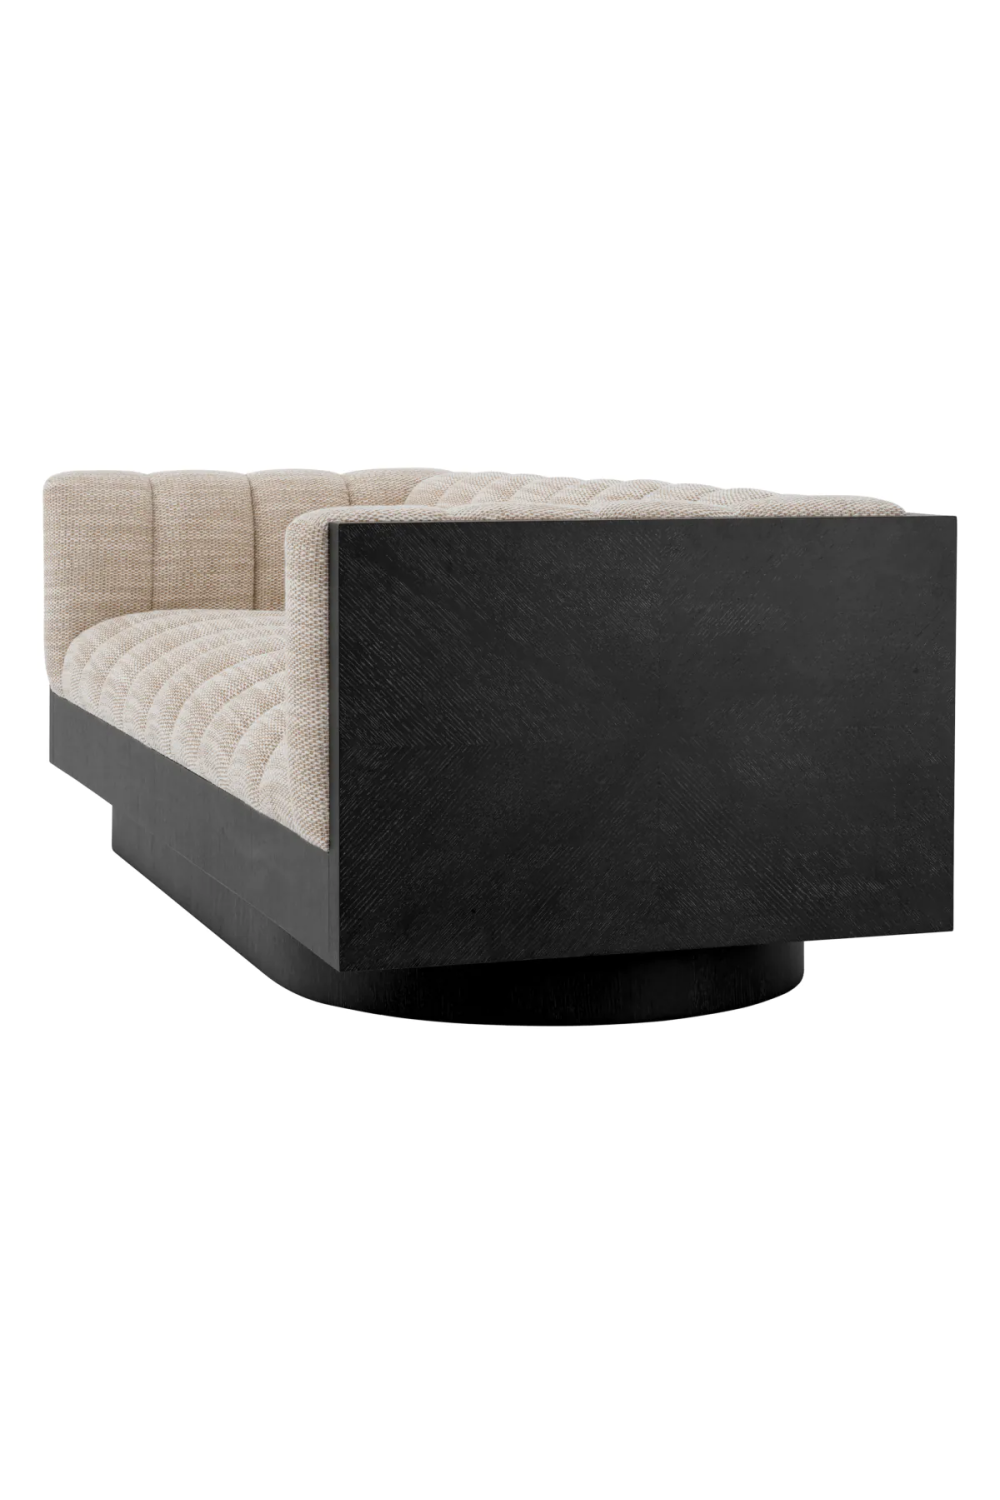 Modern Sand Fabric Sofa | Eichholtz Davide | Oroa.com